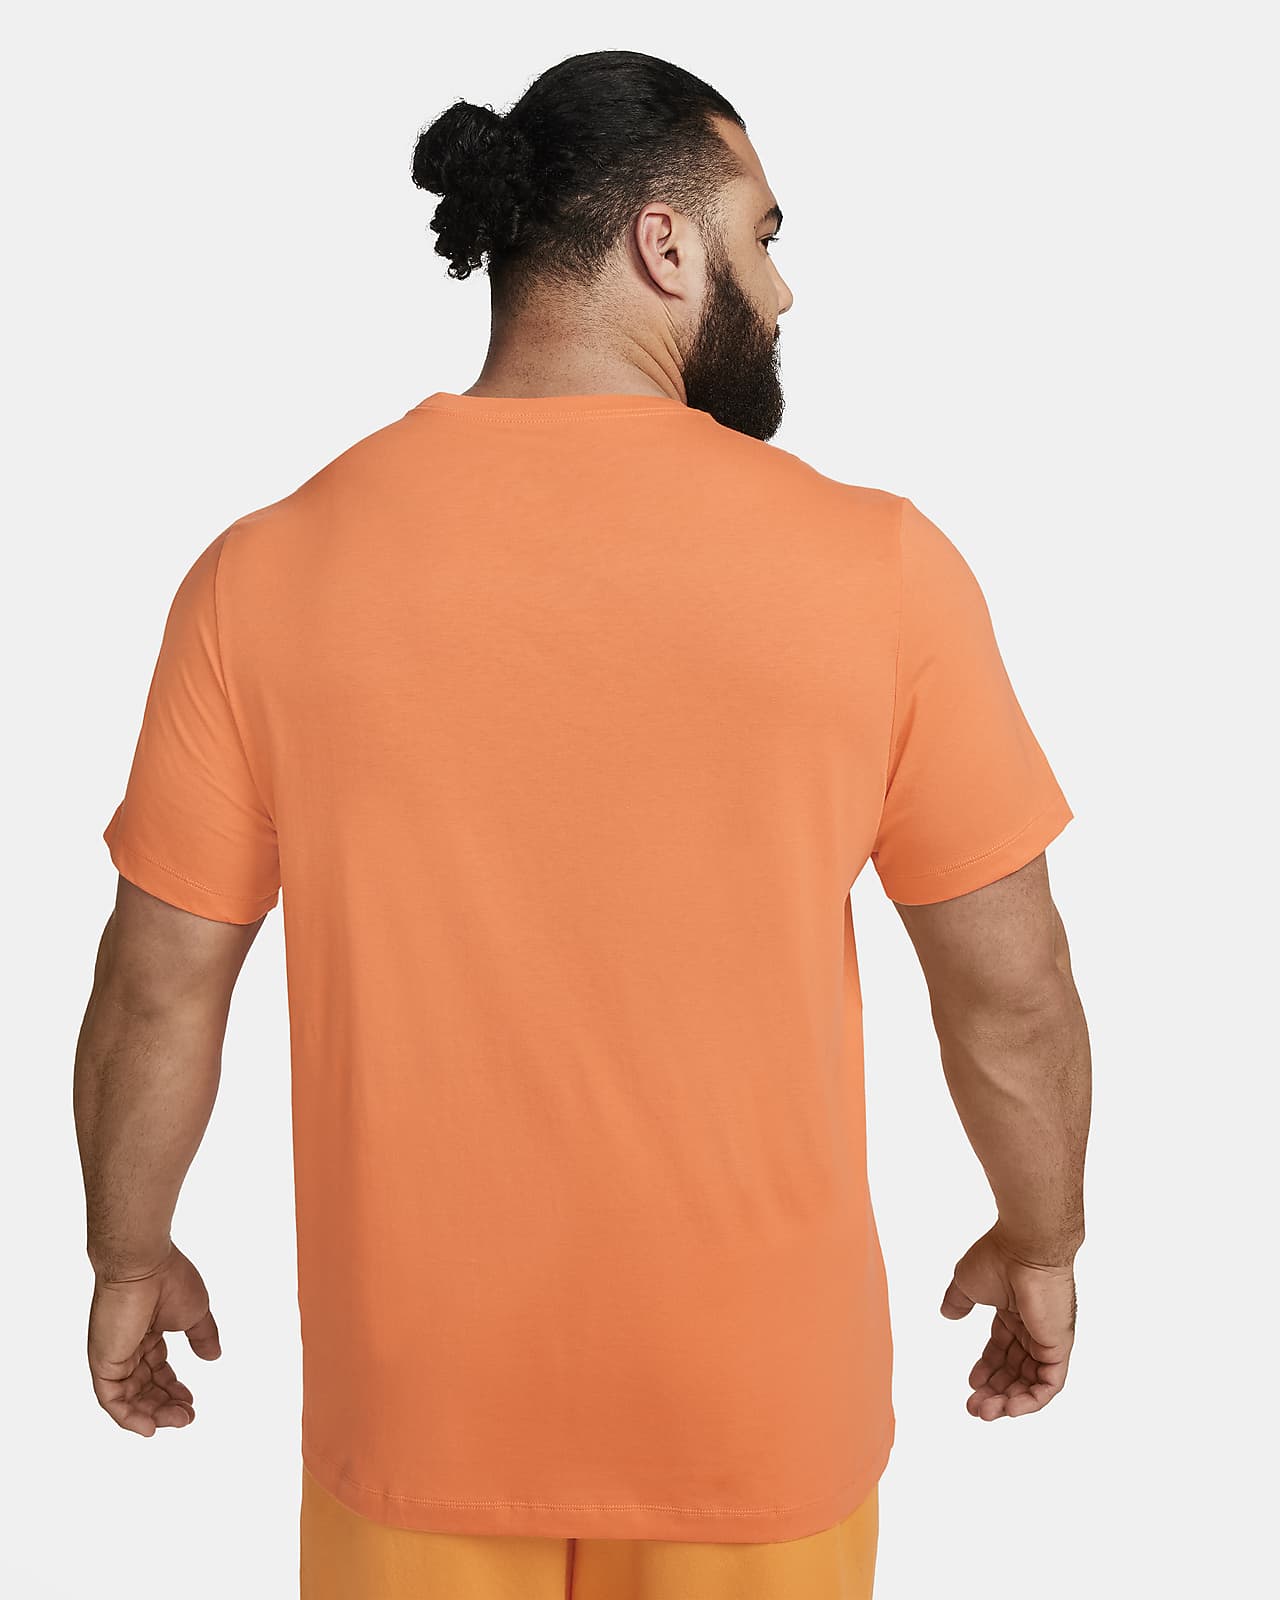 T-shirt Nike Sportswear Club para homem